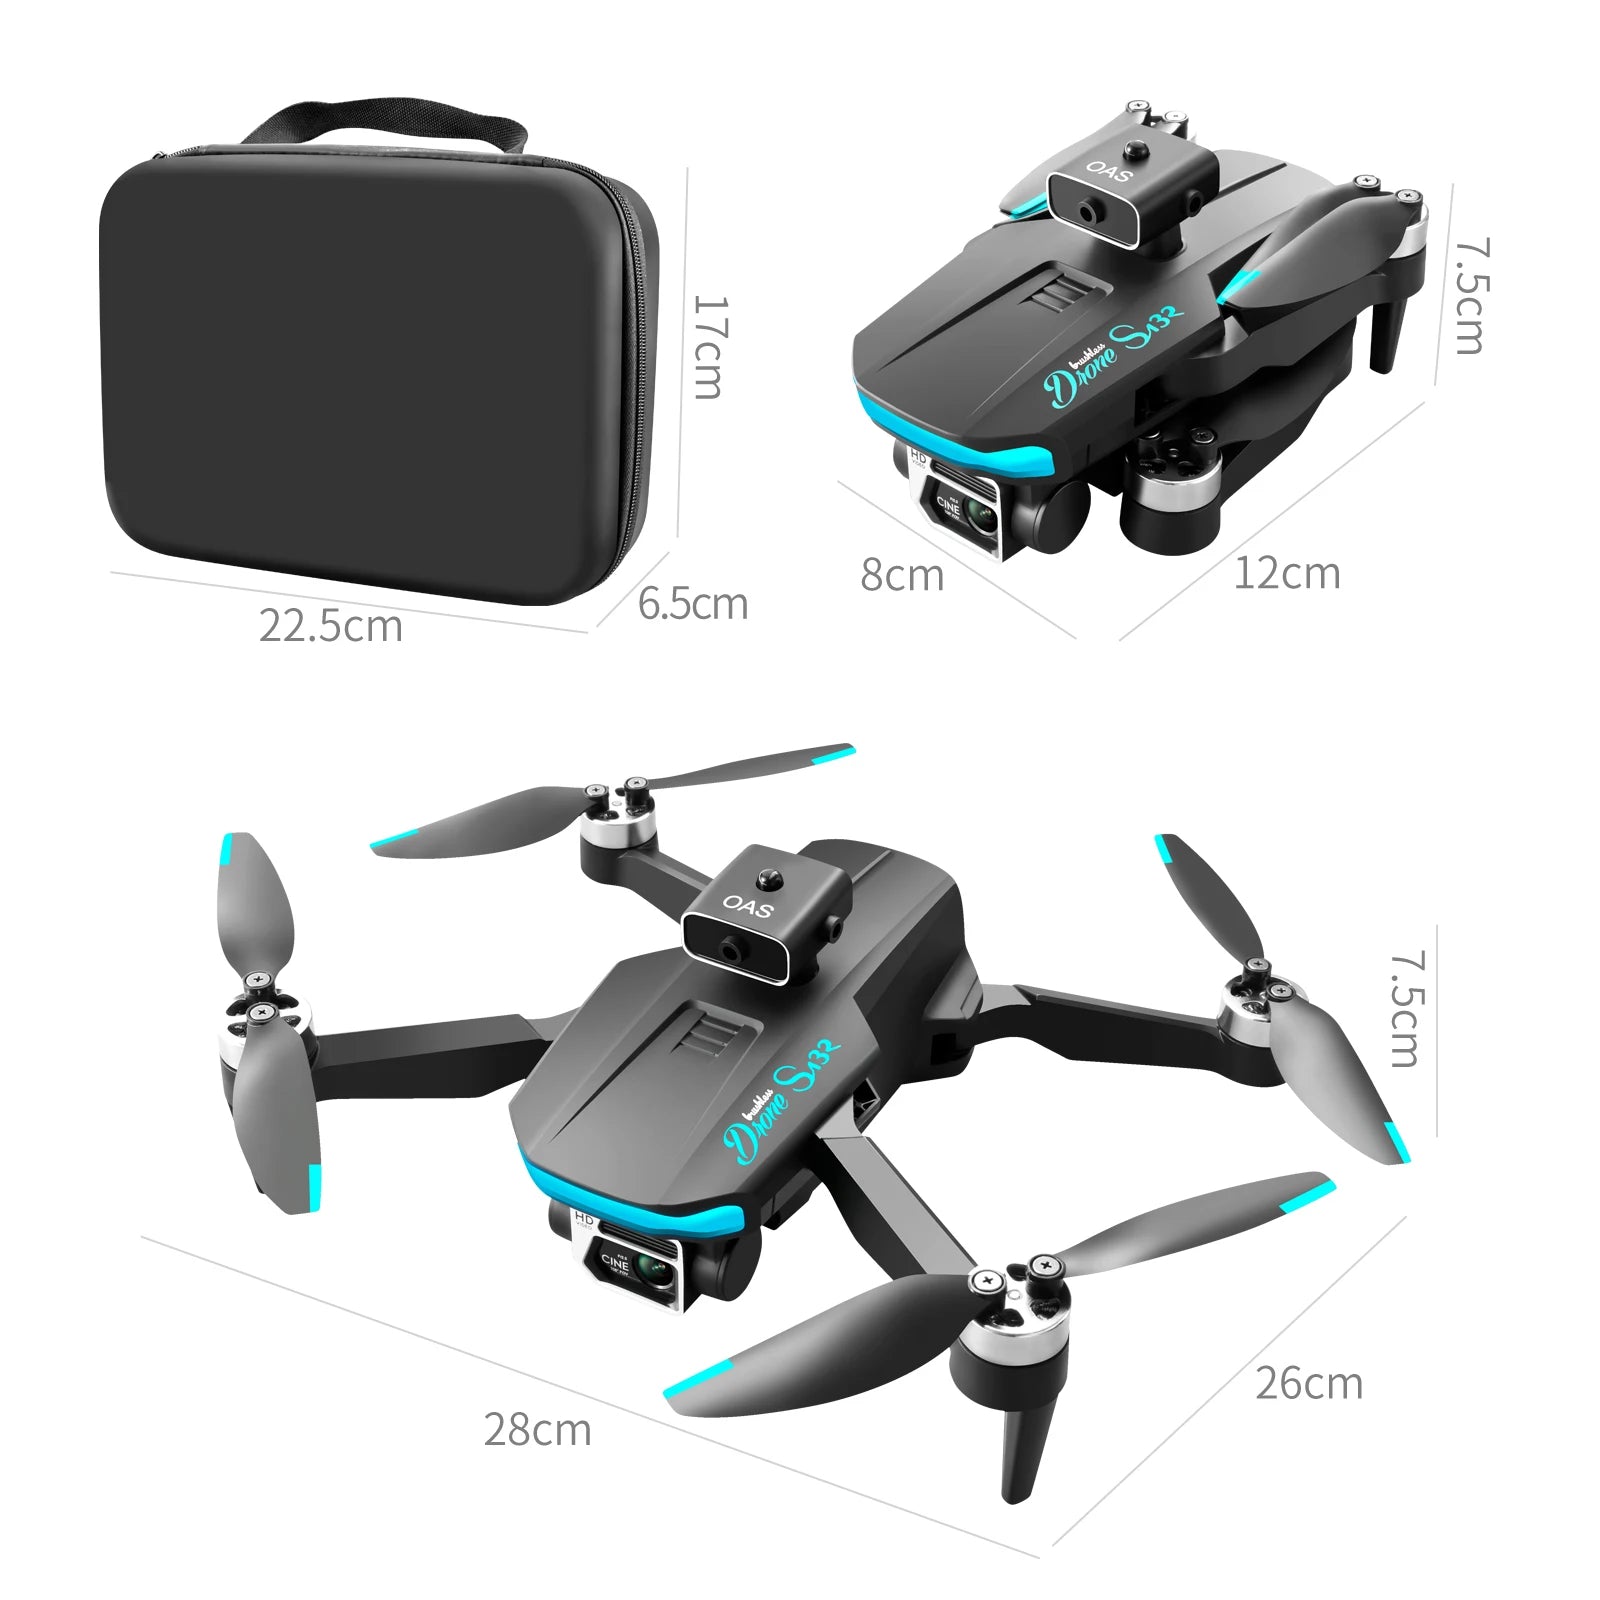 S132 Drone, 3 5 cue 8cm 12cm 6.5cm